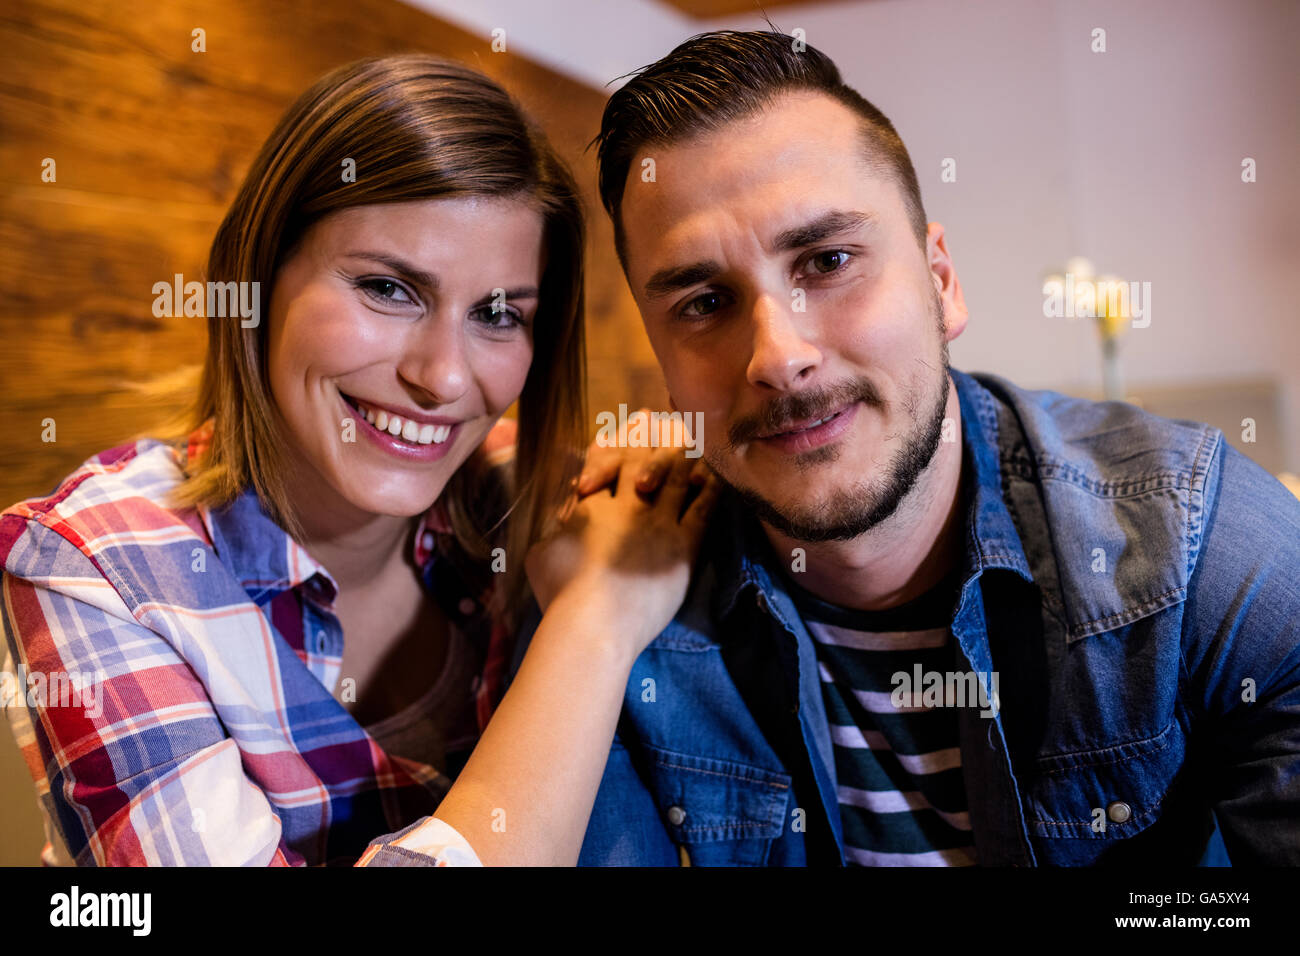 Portrait of happy couple at bar Banque D'Images